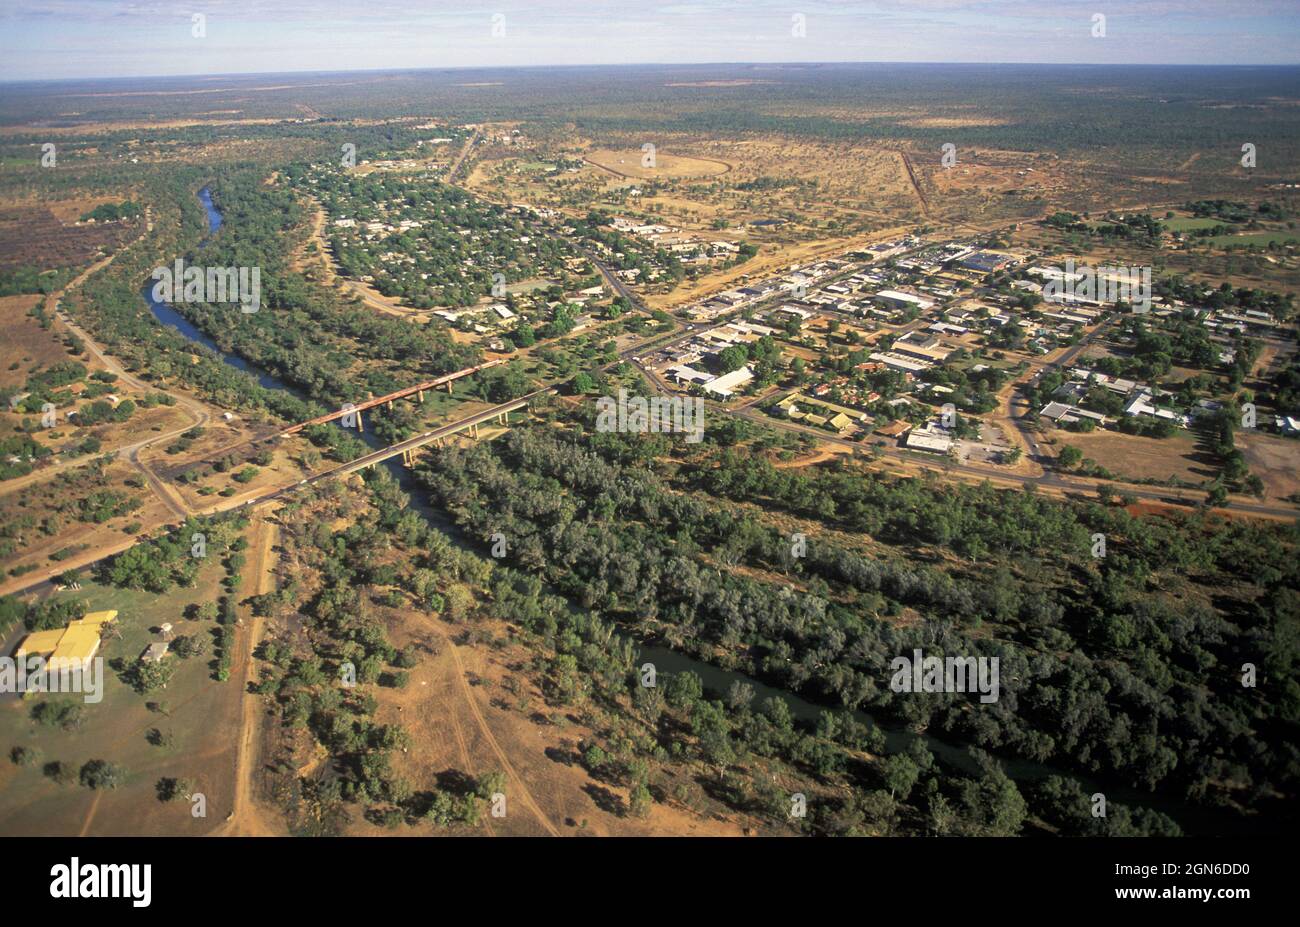 La rivière Katherine et la ville de Katherine dans le territoire du Nord, en Australie. Banque D'Images